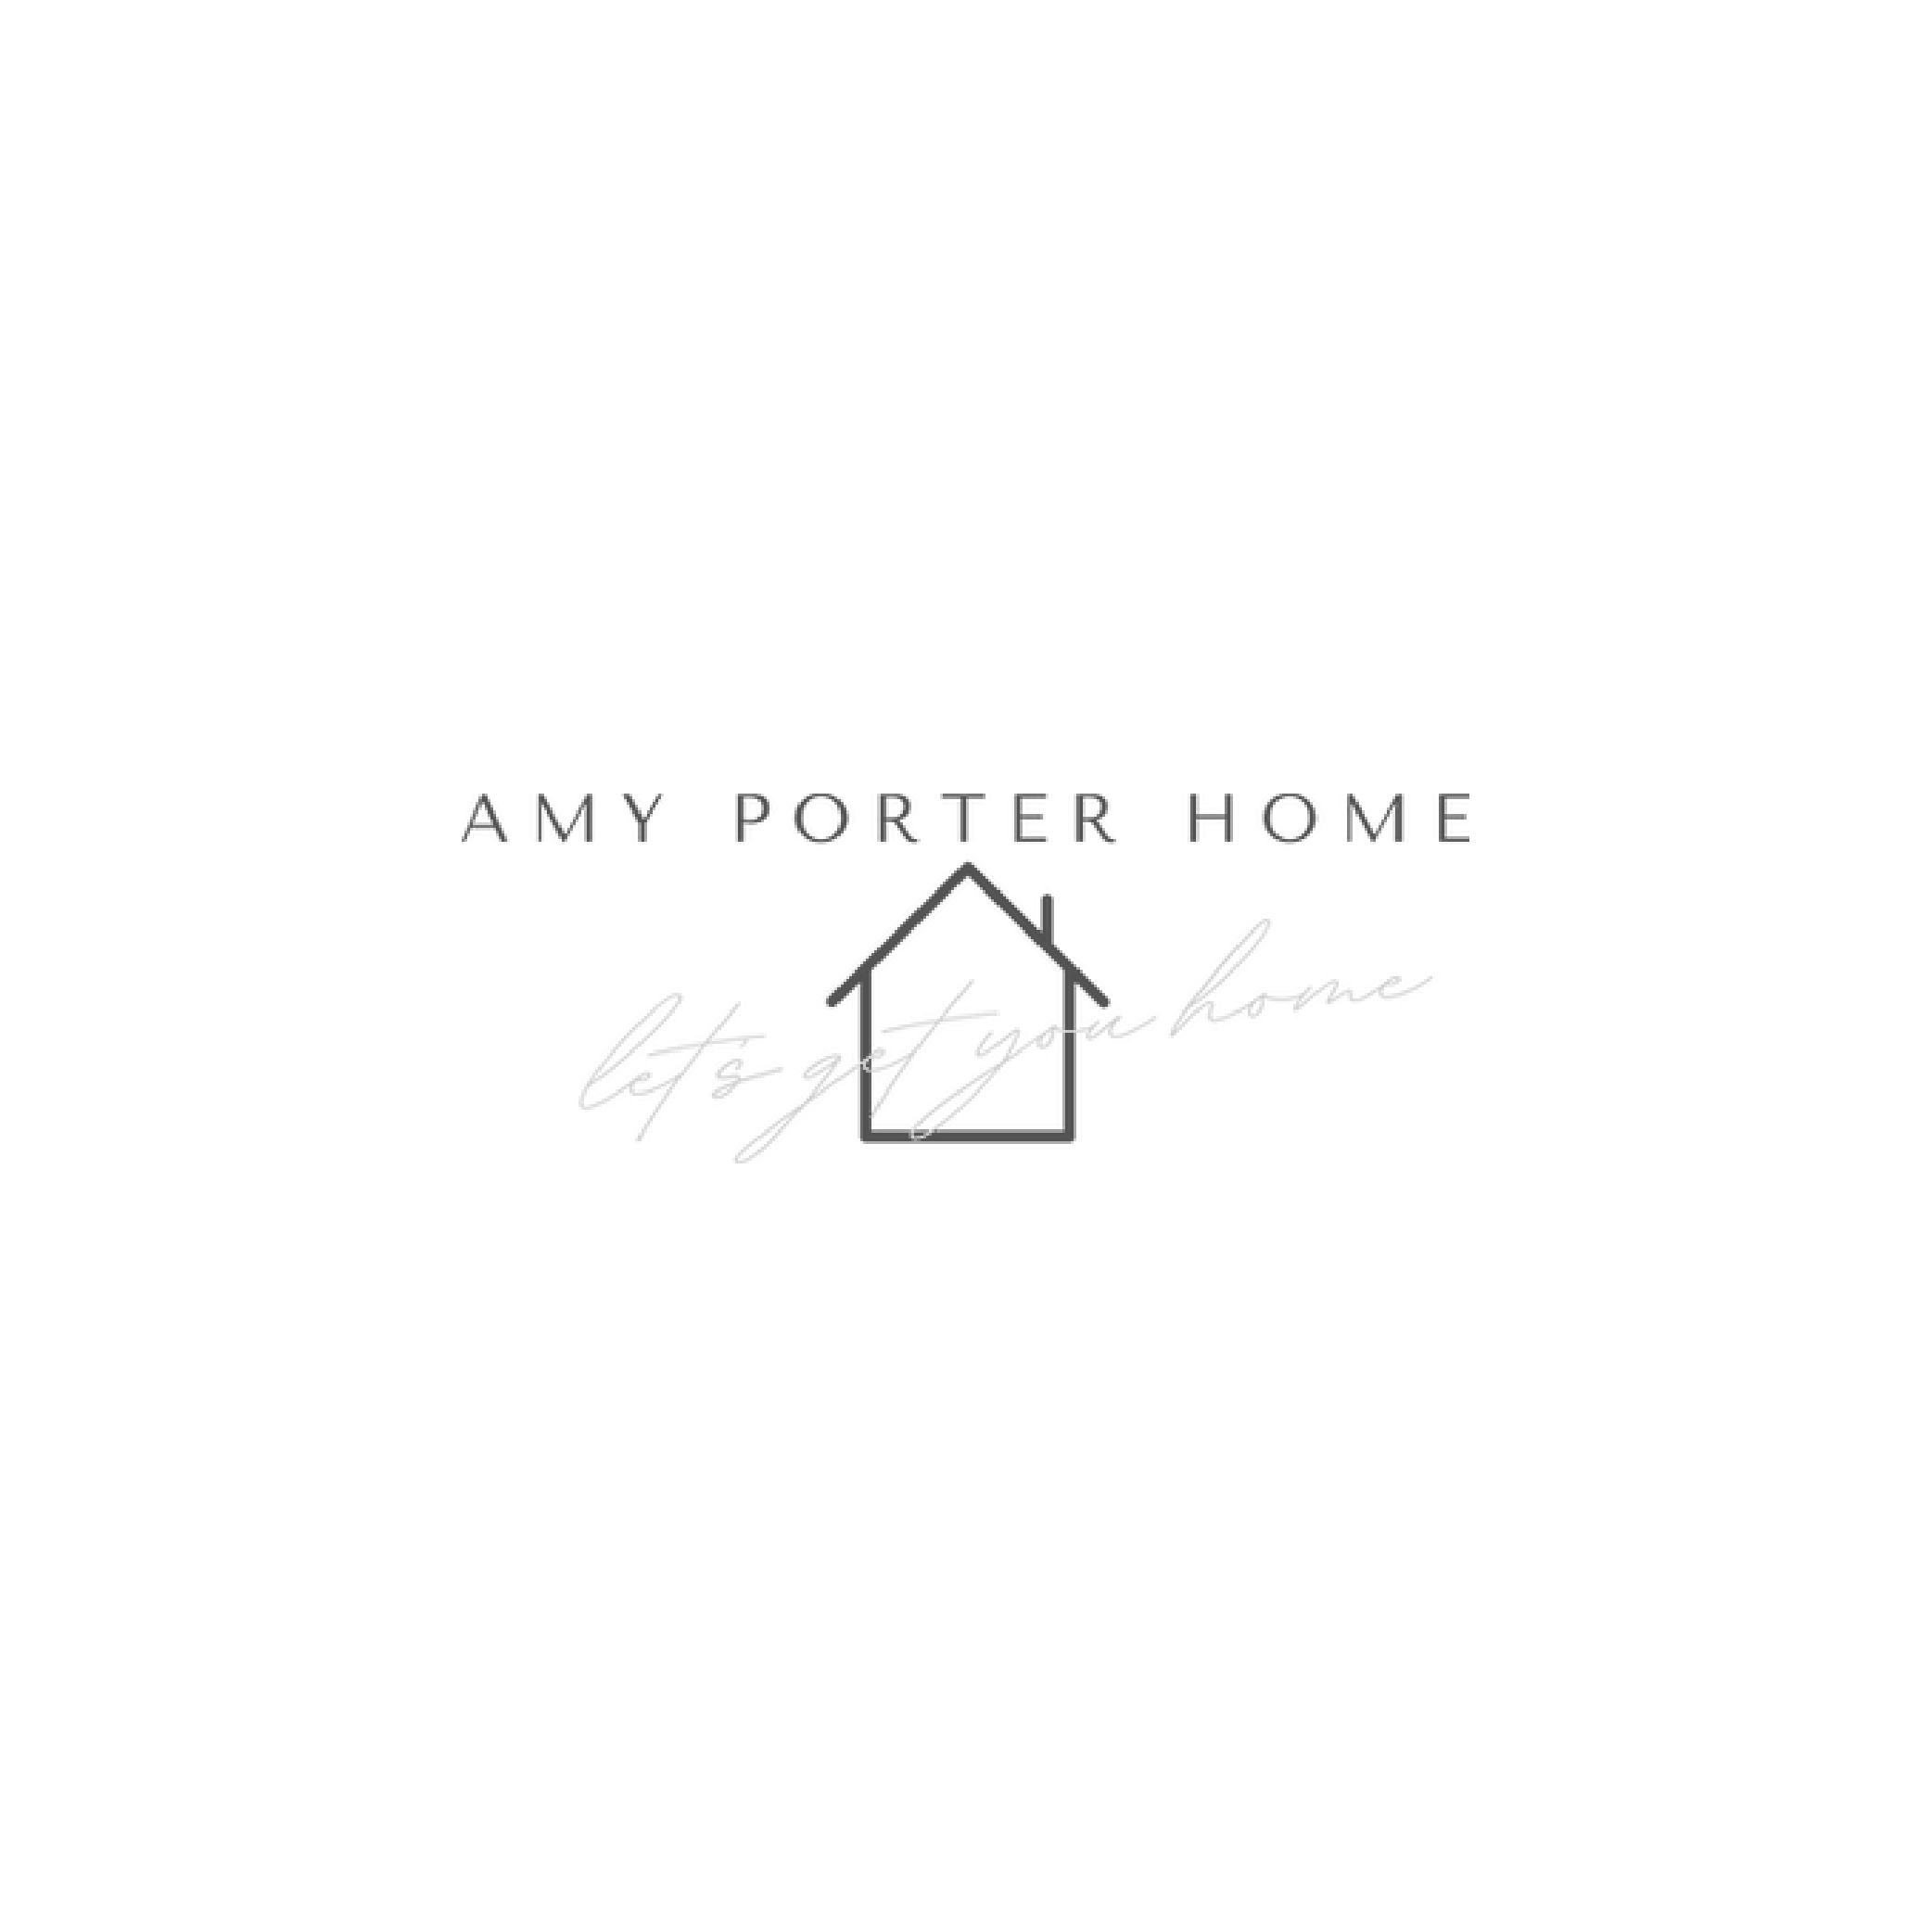 Amy Porter Home